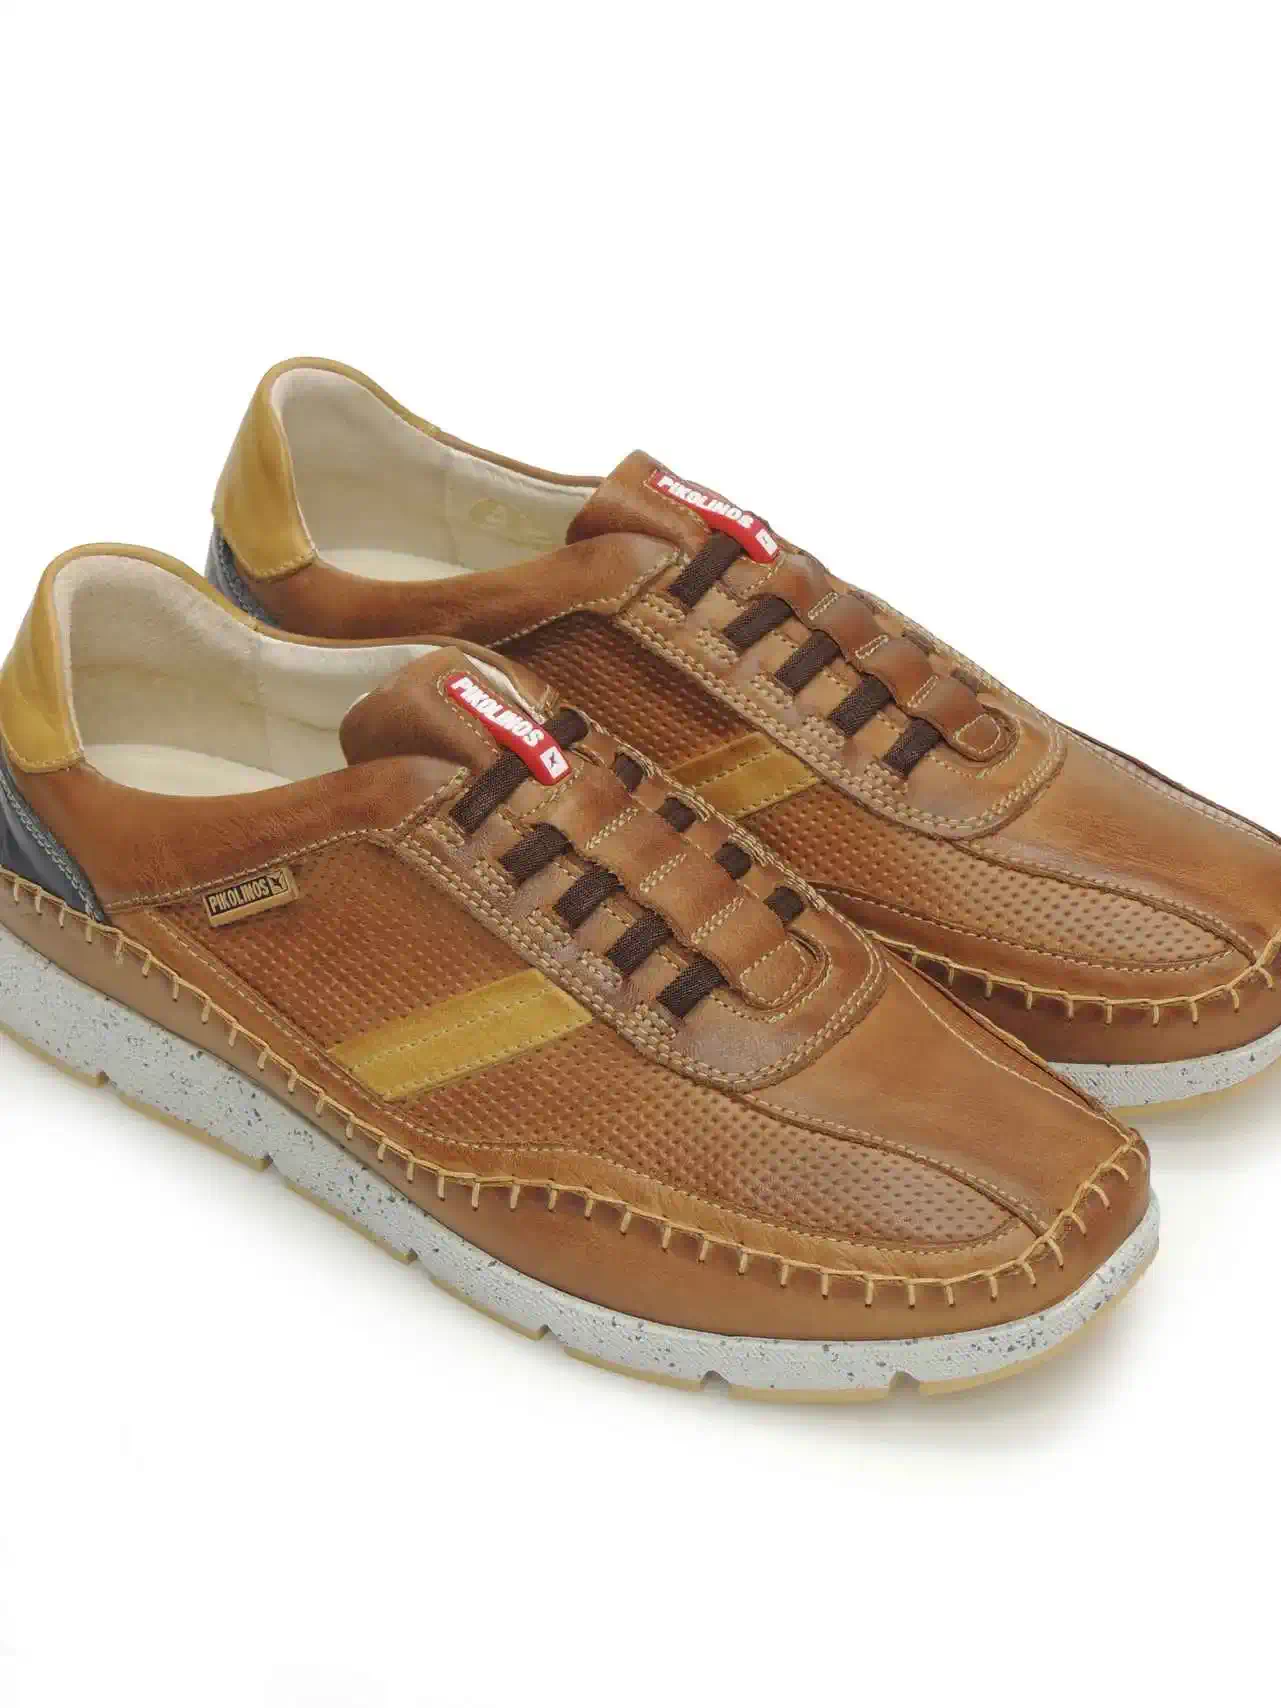 sneakers--pikolinos-m4u-6046c1-piel-marron